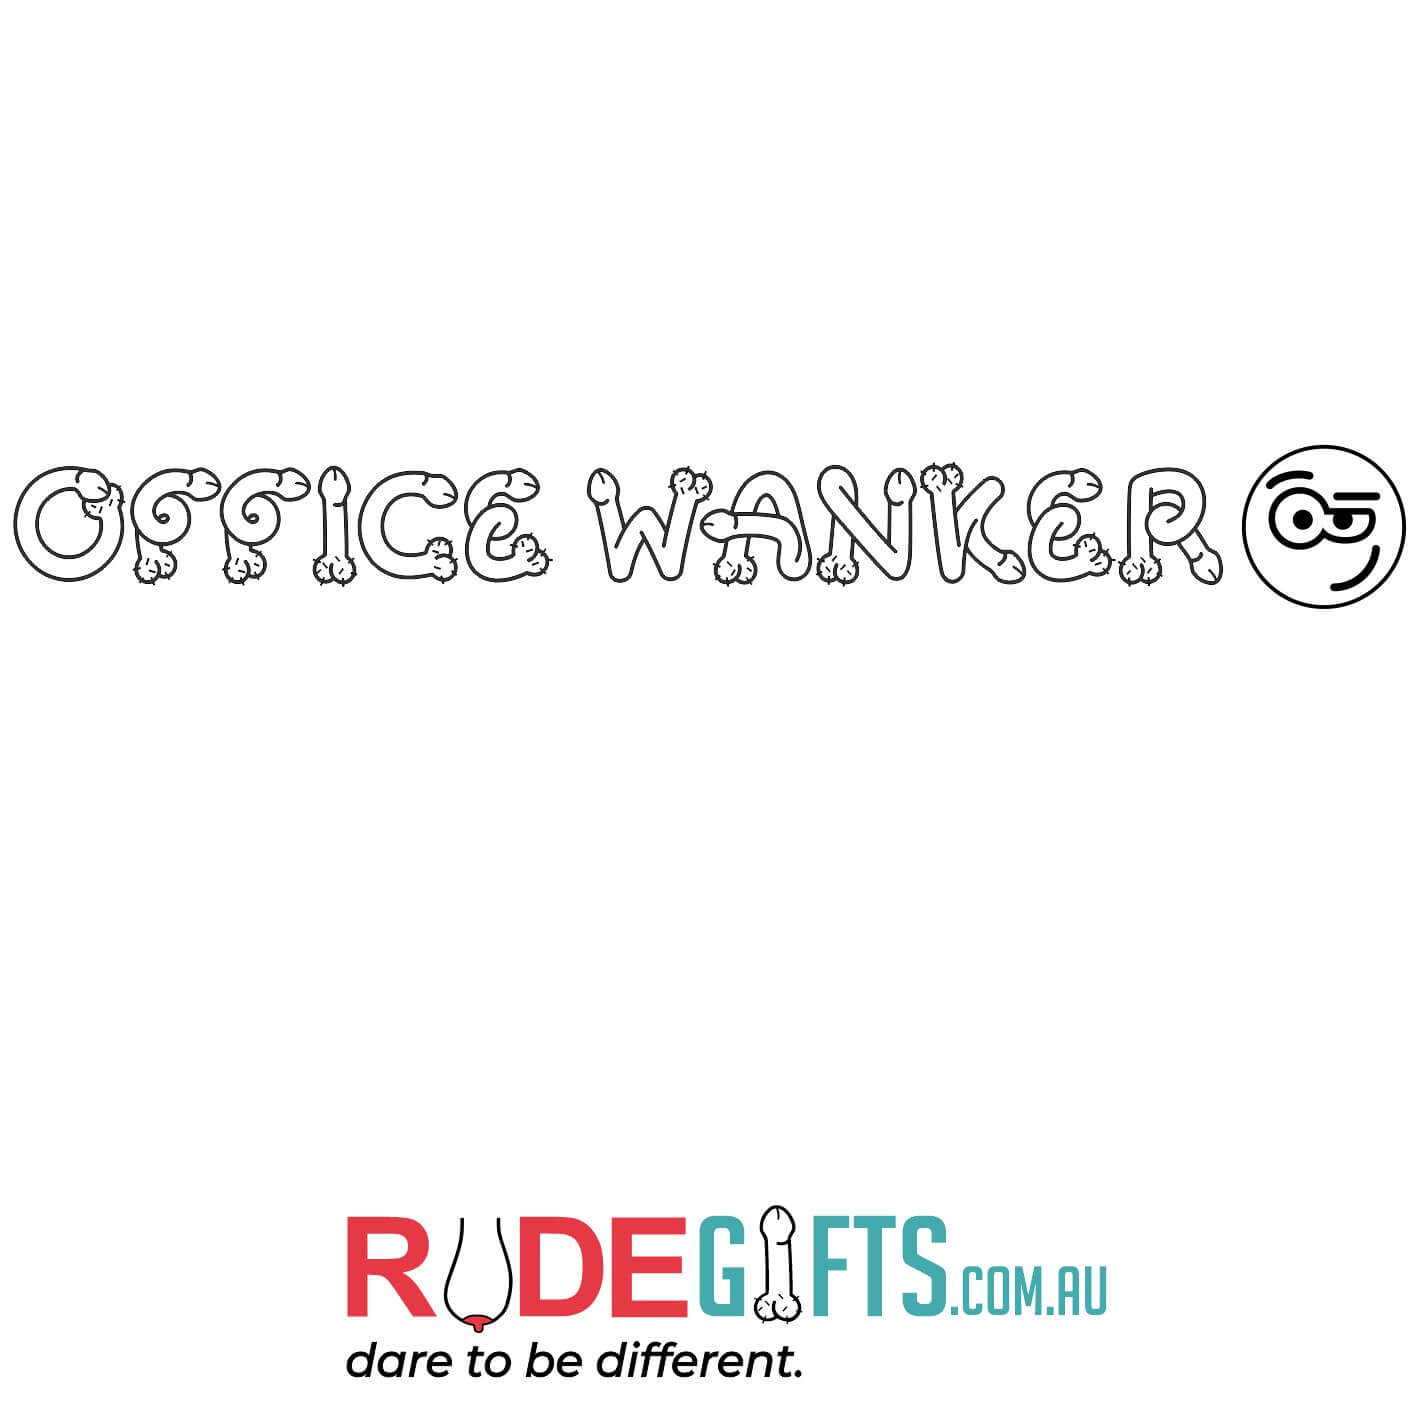 Office Wanker - 0